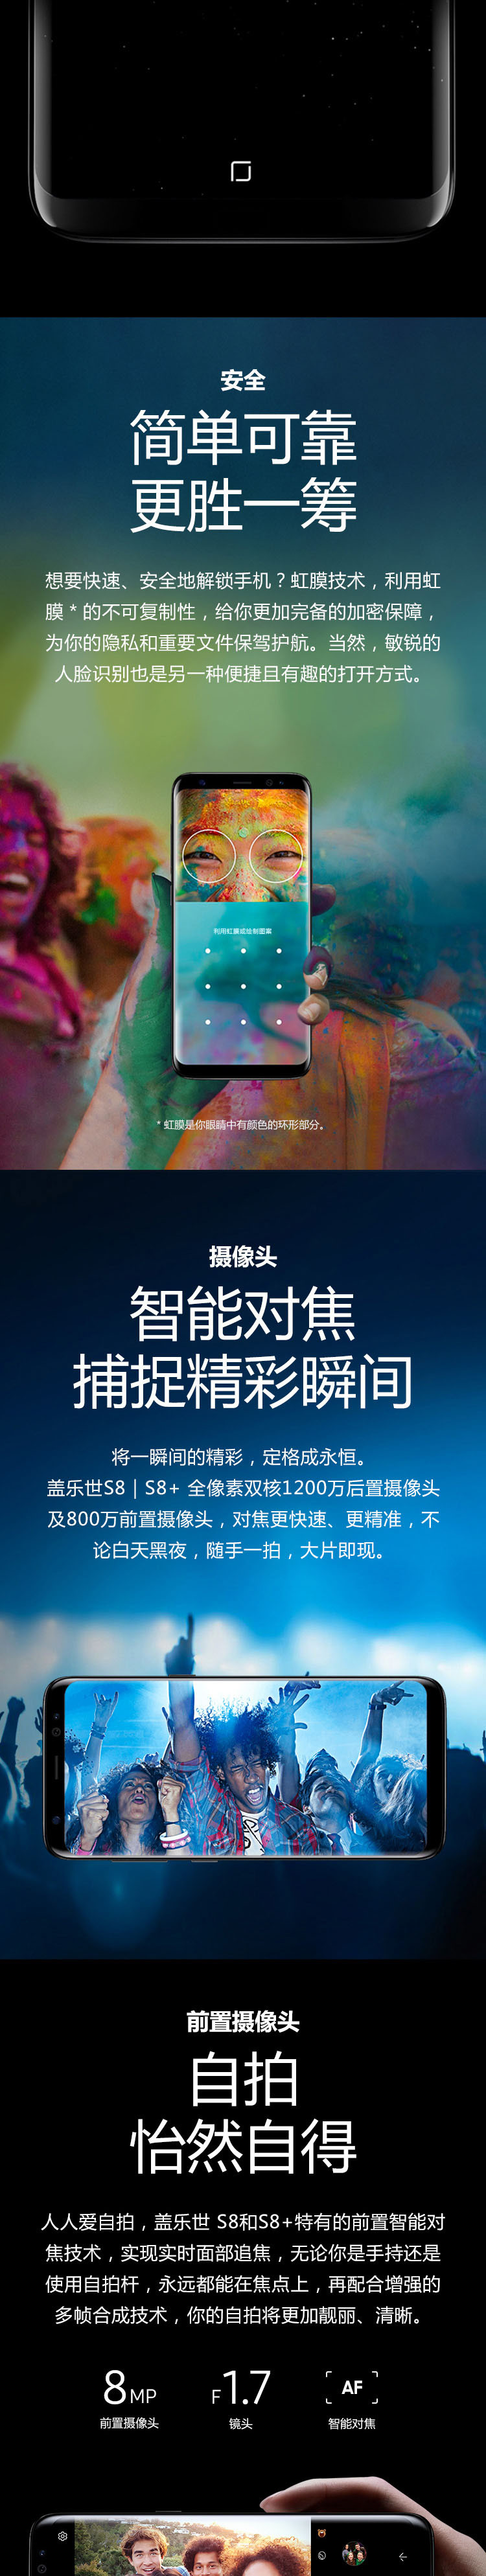 三星/SAMSUNG S8+ SM-G9550 64G 全视曲面屏 全网通 4G手机